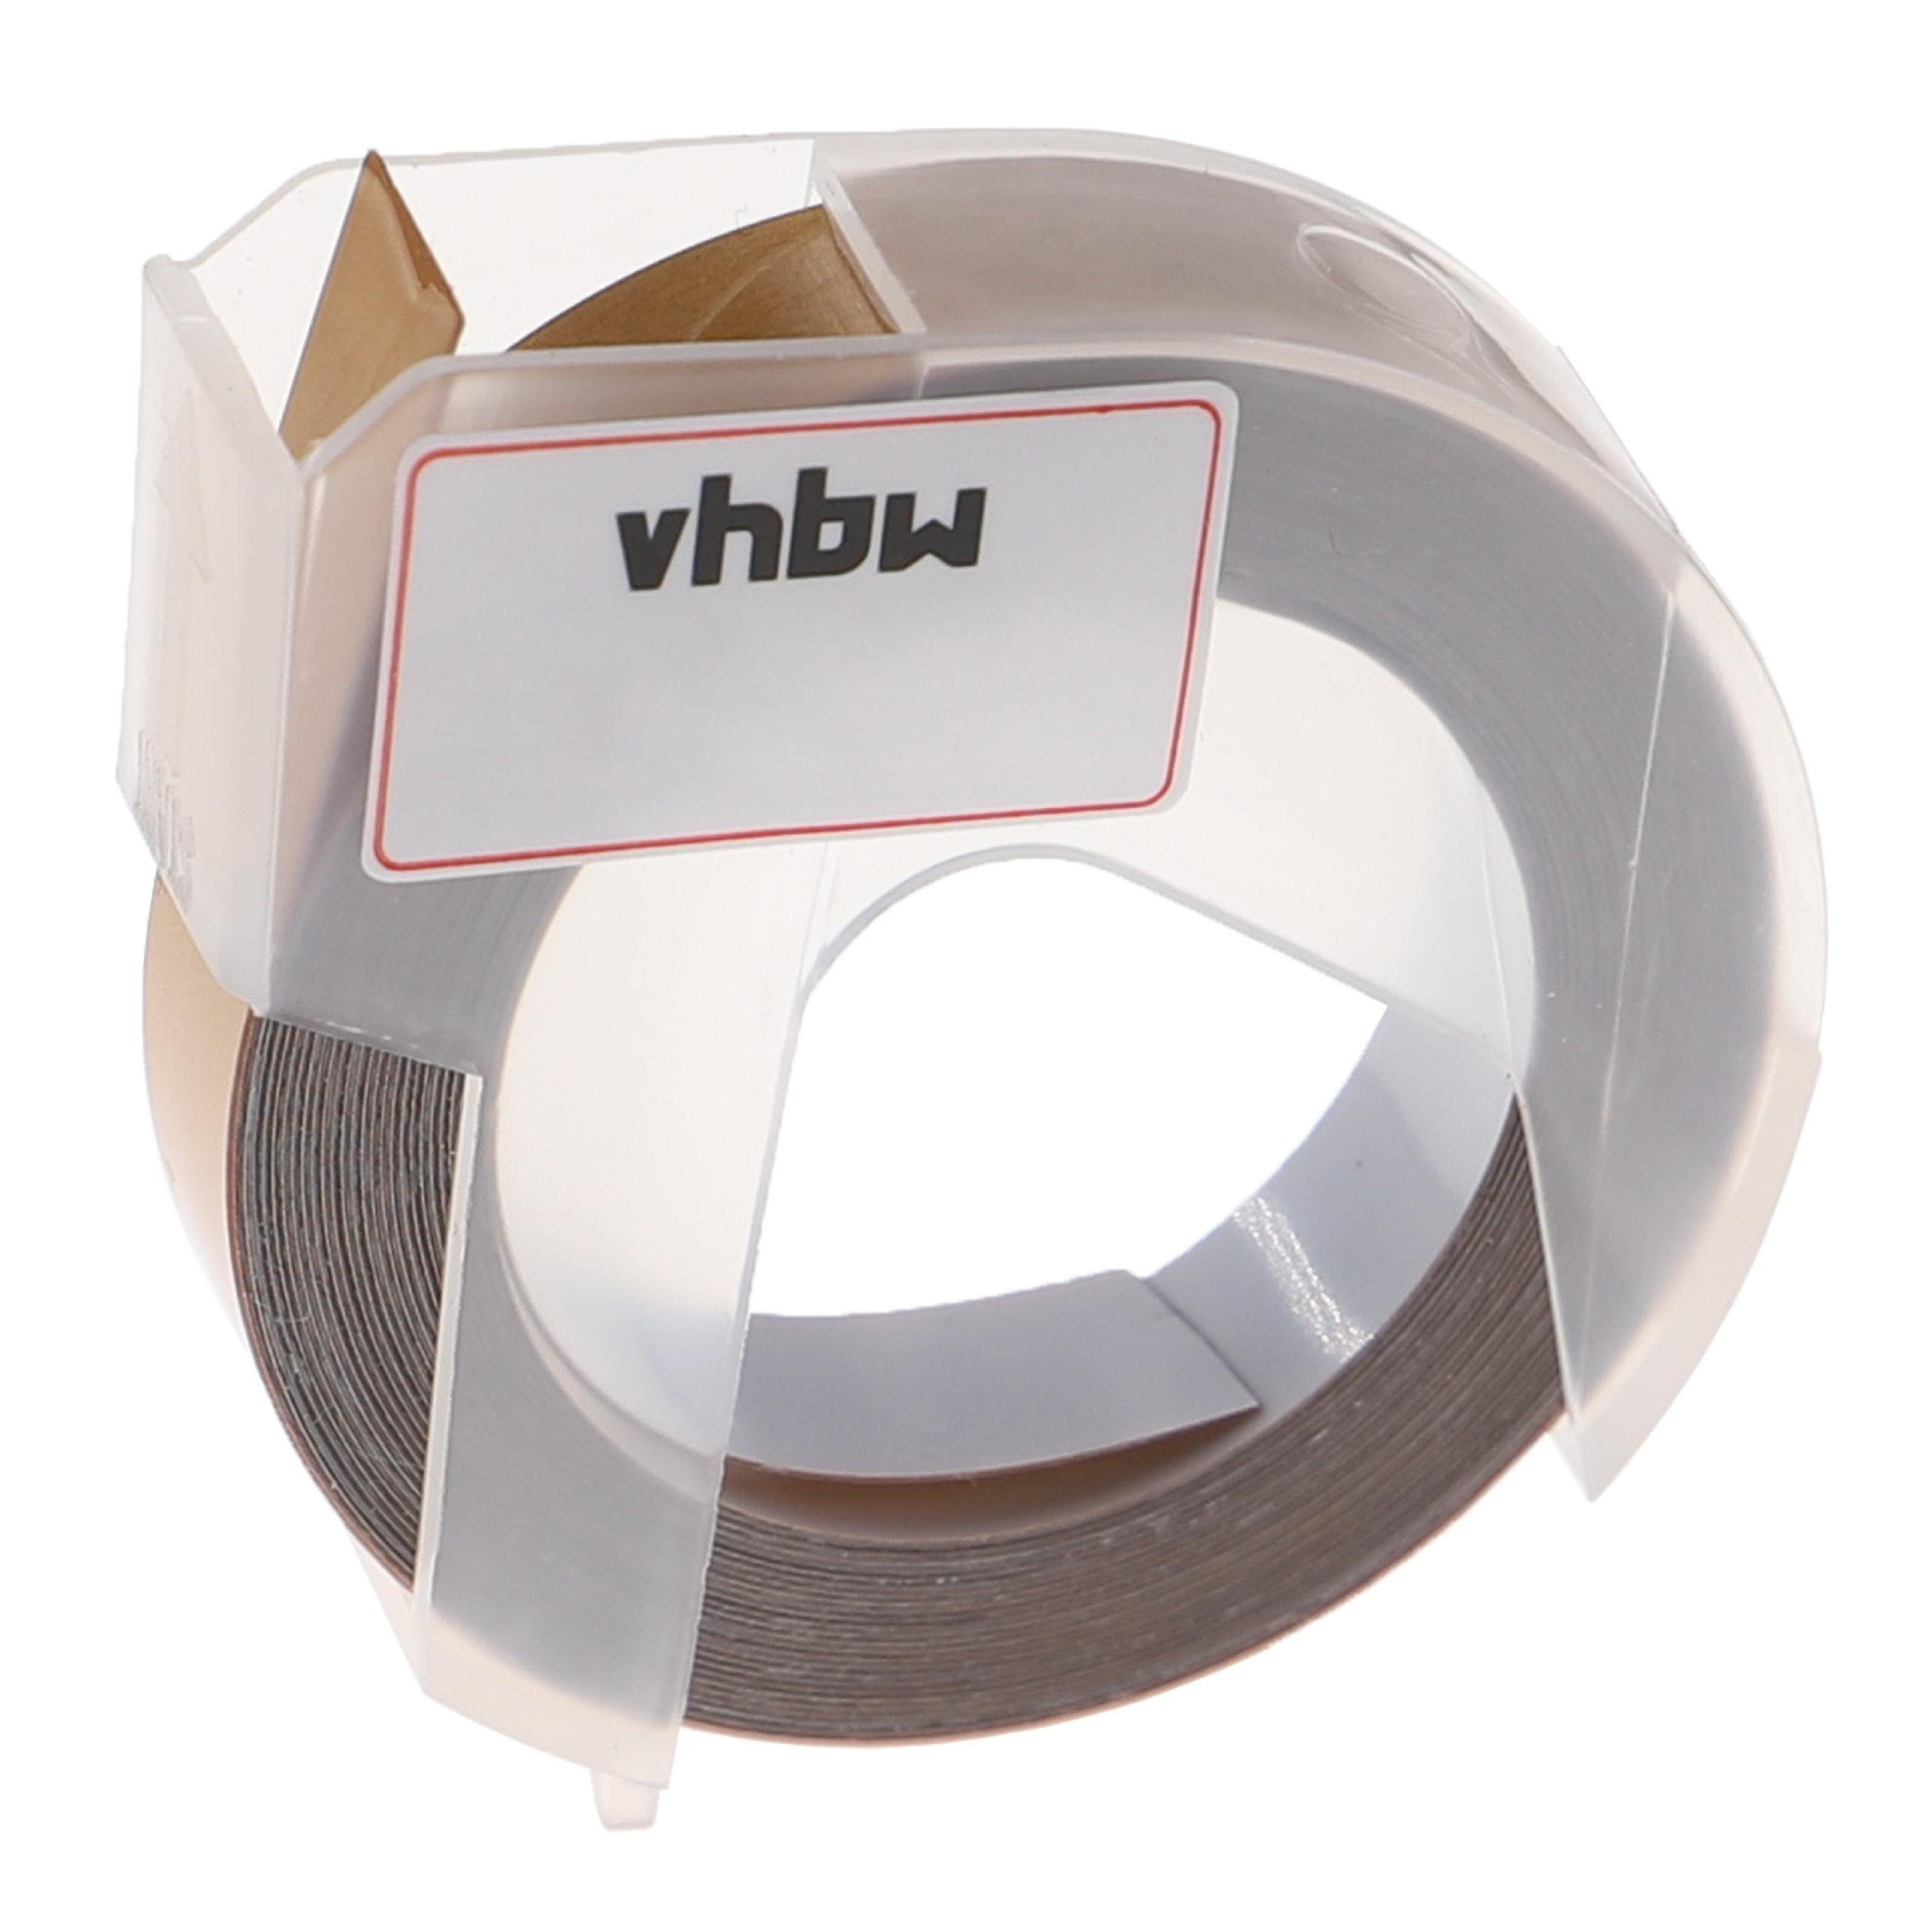 vhbw Beschriftungsband passend für Phomemo E975 Beschriftungsgerät / Drucker & Kopierer